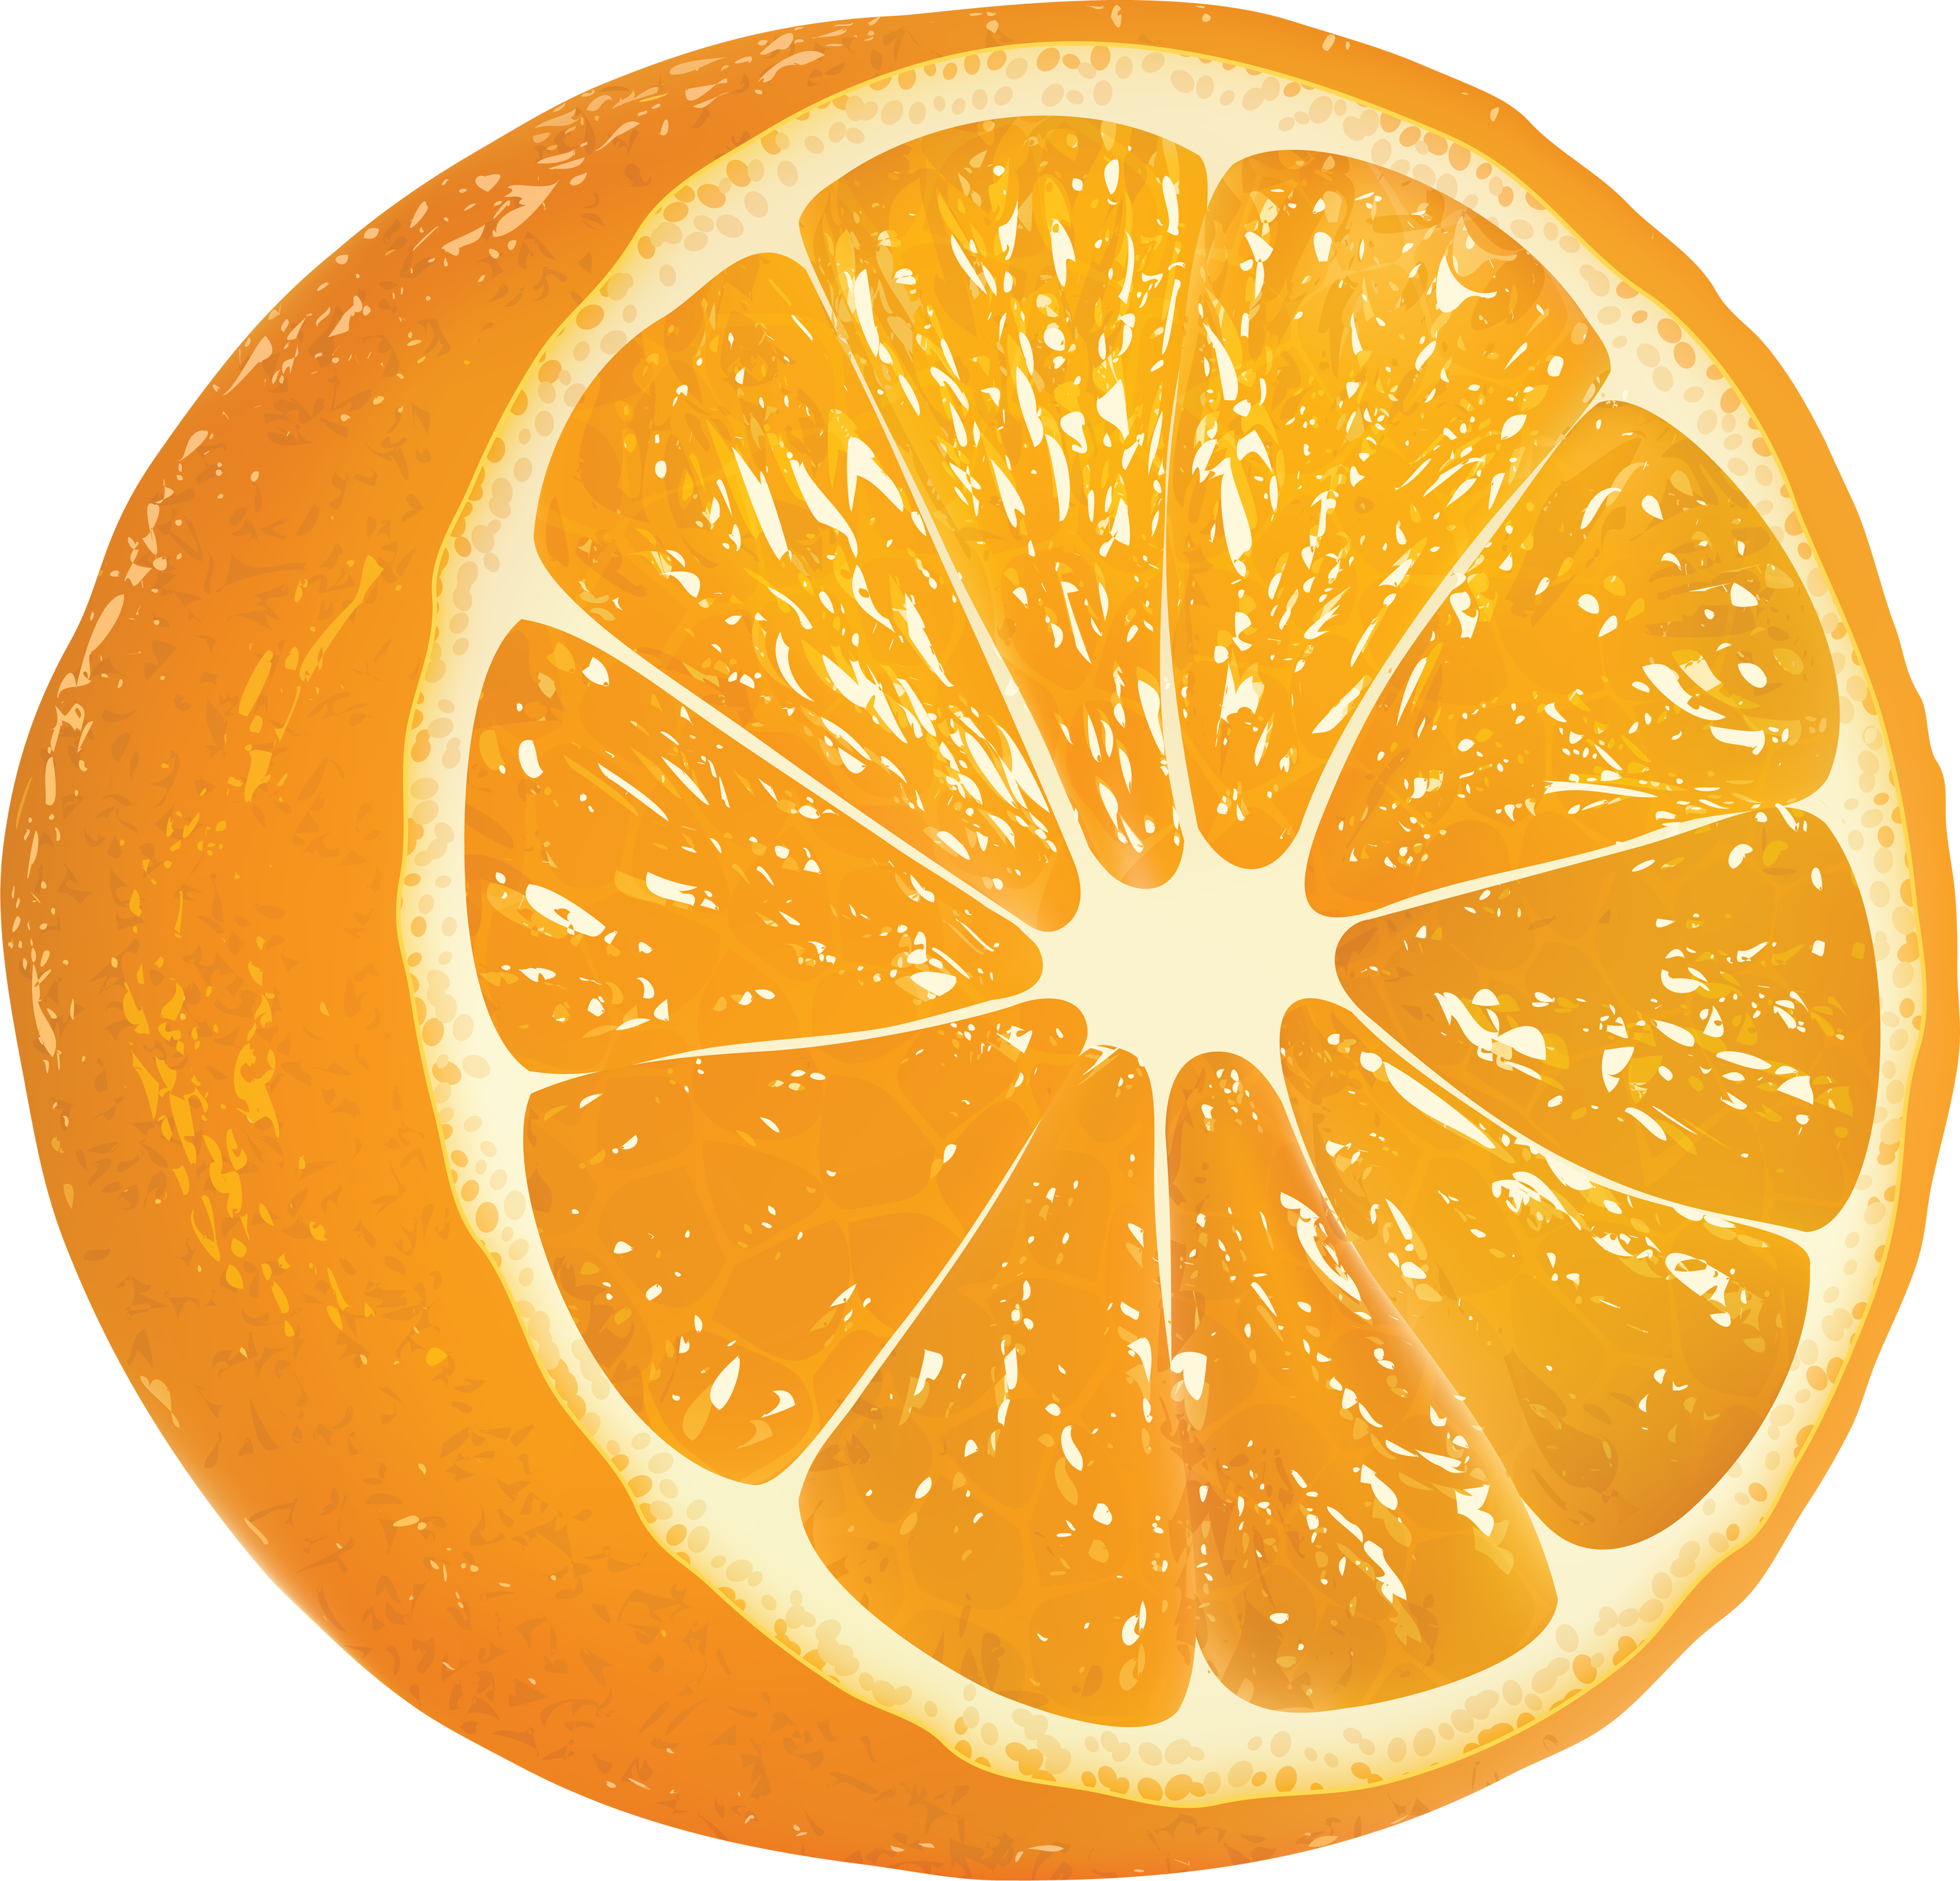 Orange PNG image free Download